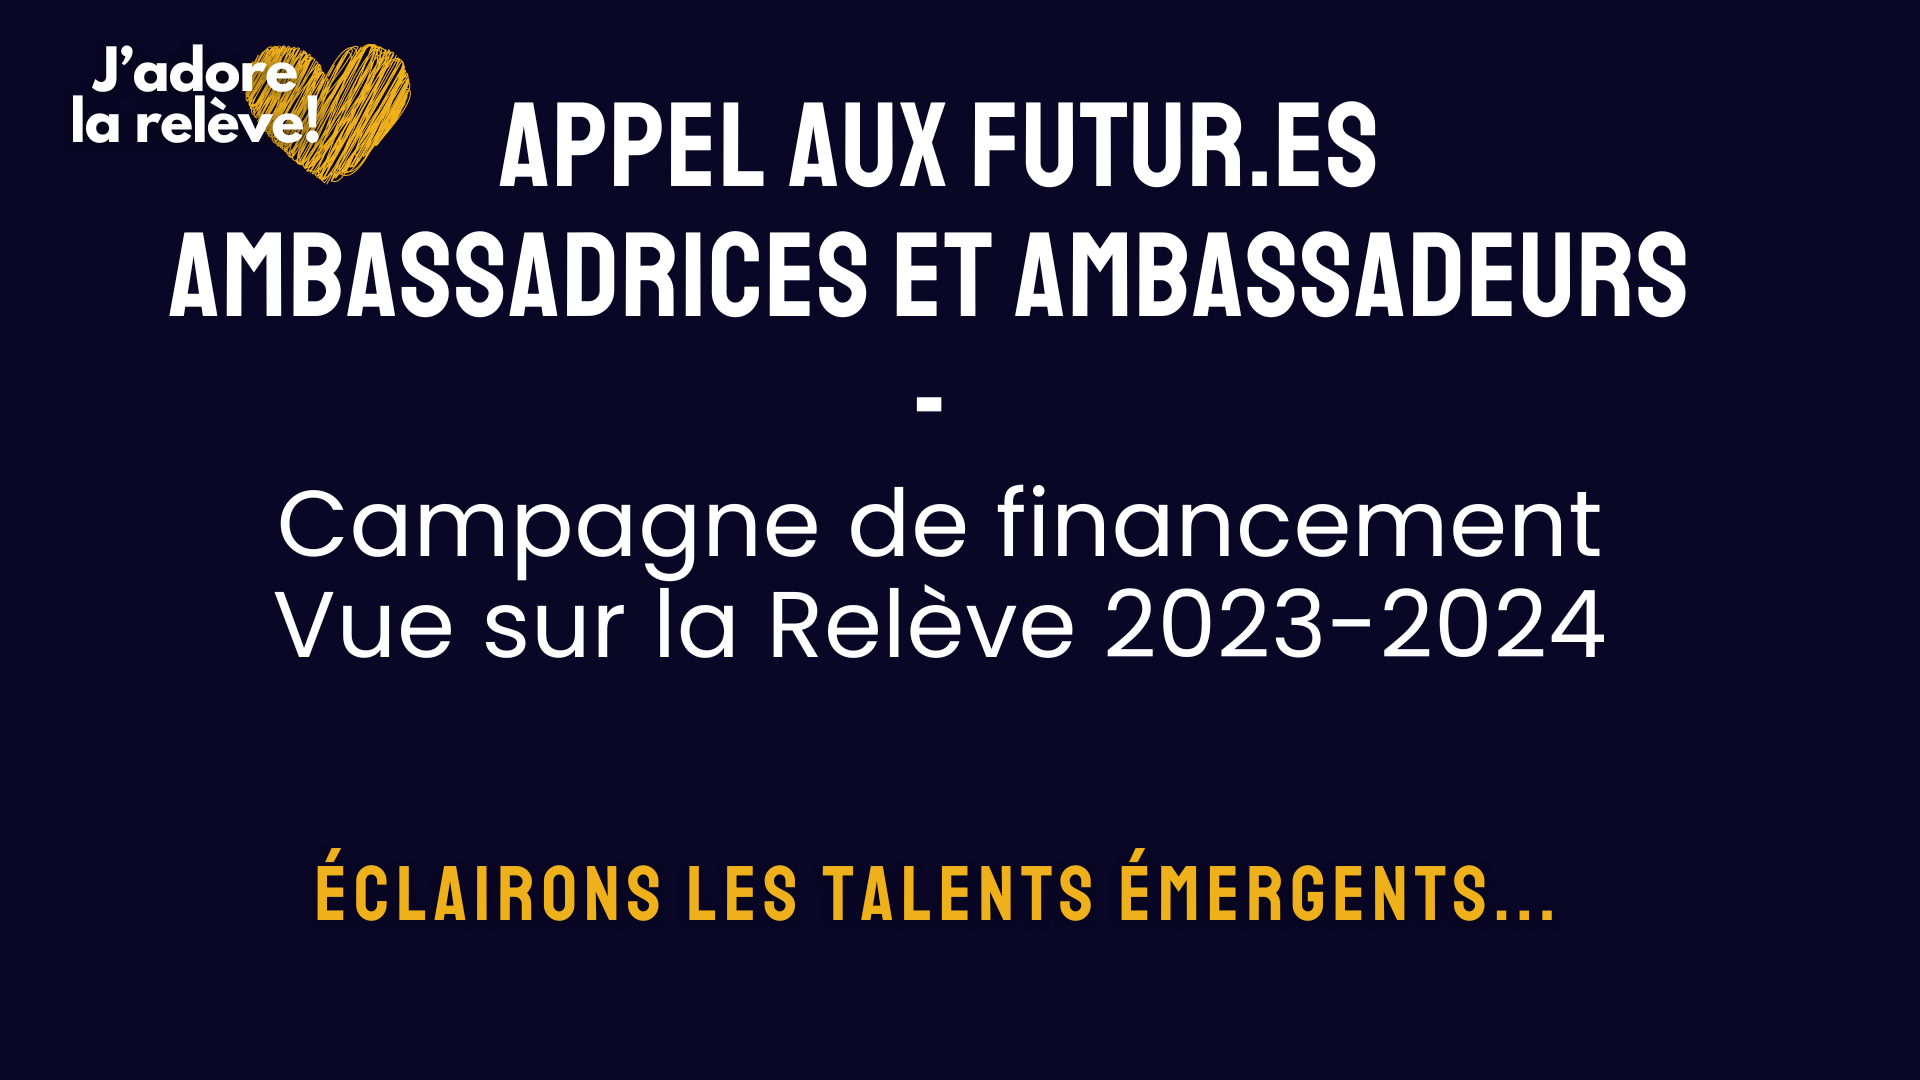 Les ambassadrices et ambassadeurs de la campagne de financement Vue sur la Relève 2023-2024 jouent un rôle crucial en amplifiant le message : "J'adore la relève ! Éclairons les talents émergents..."